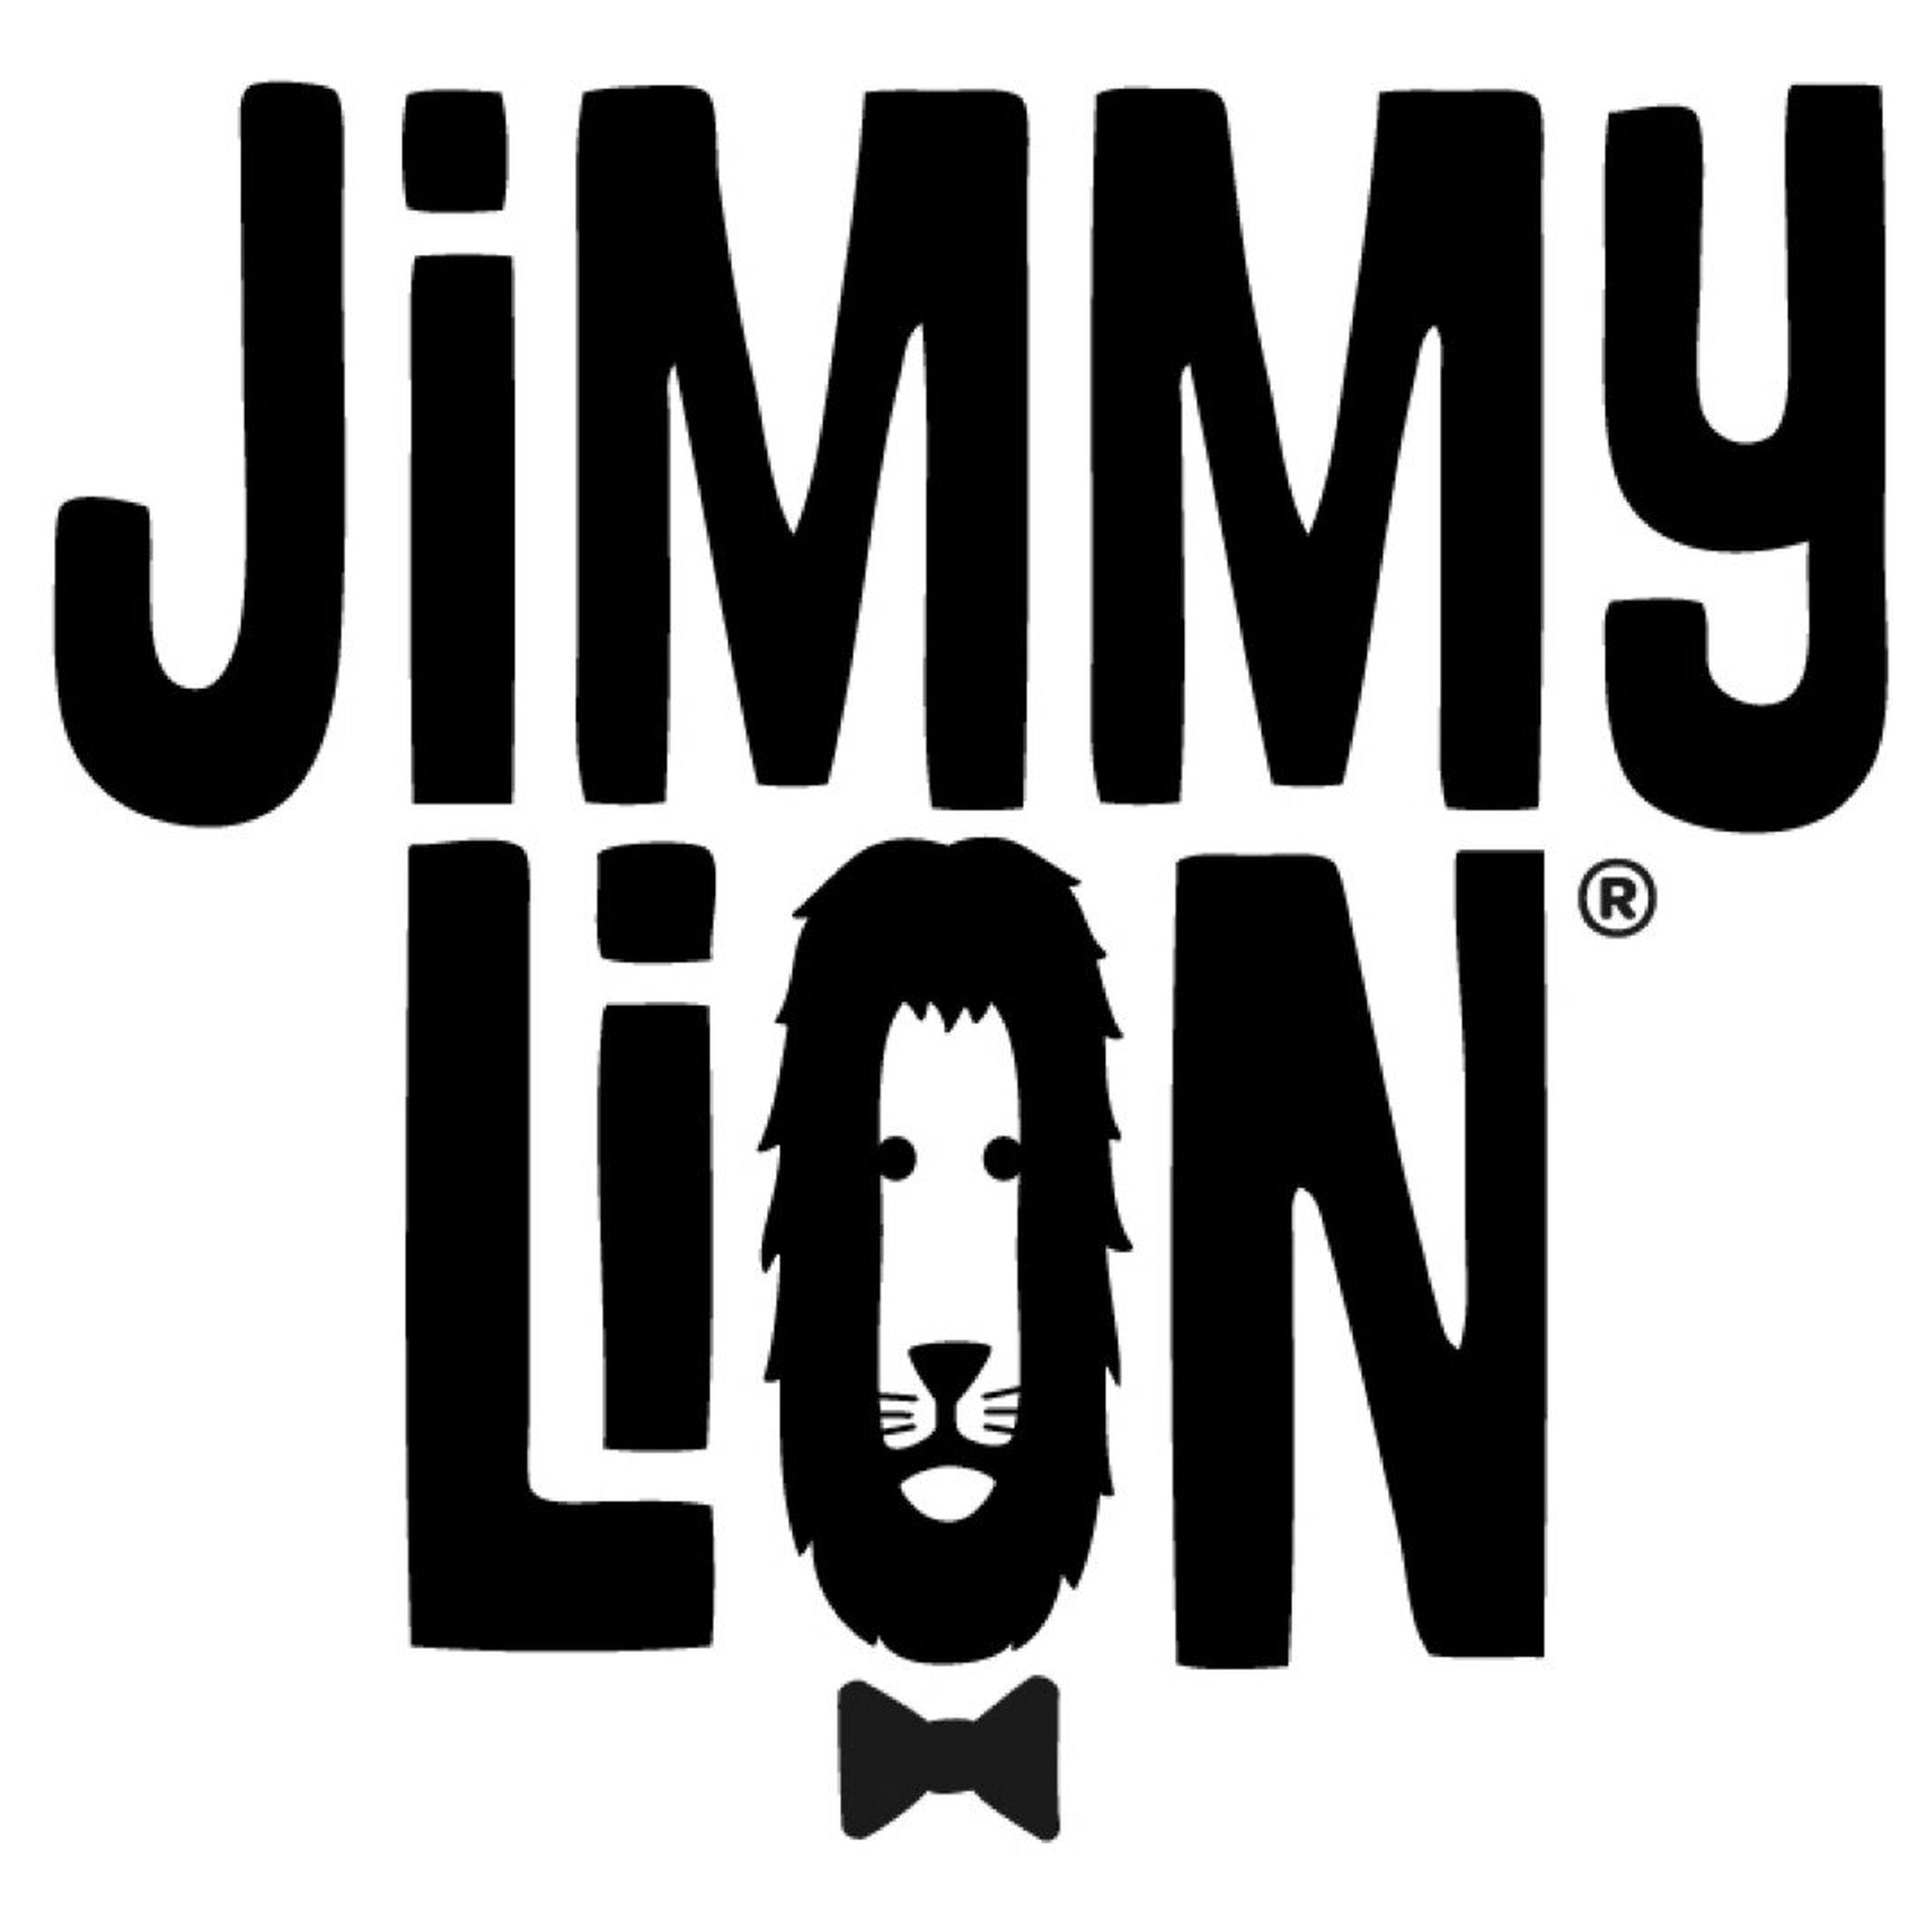 JIMMY LION